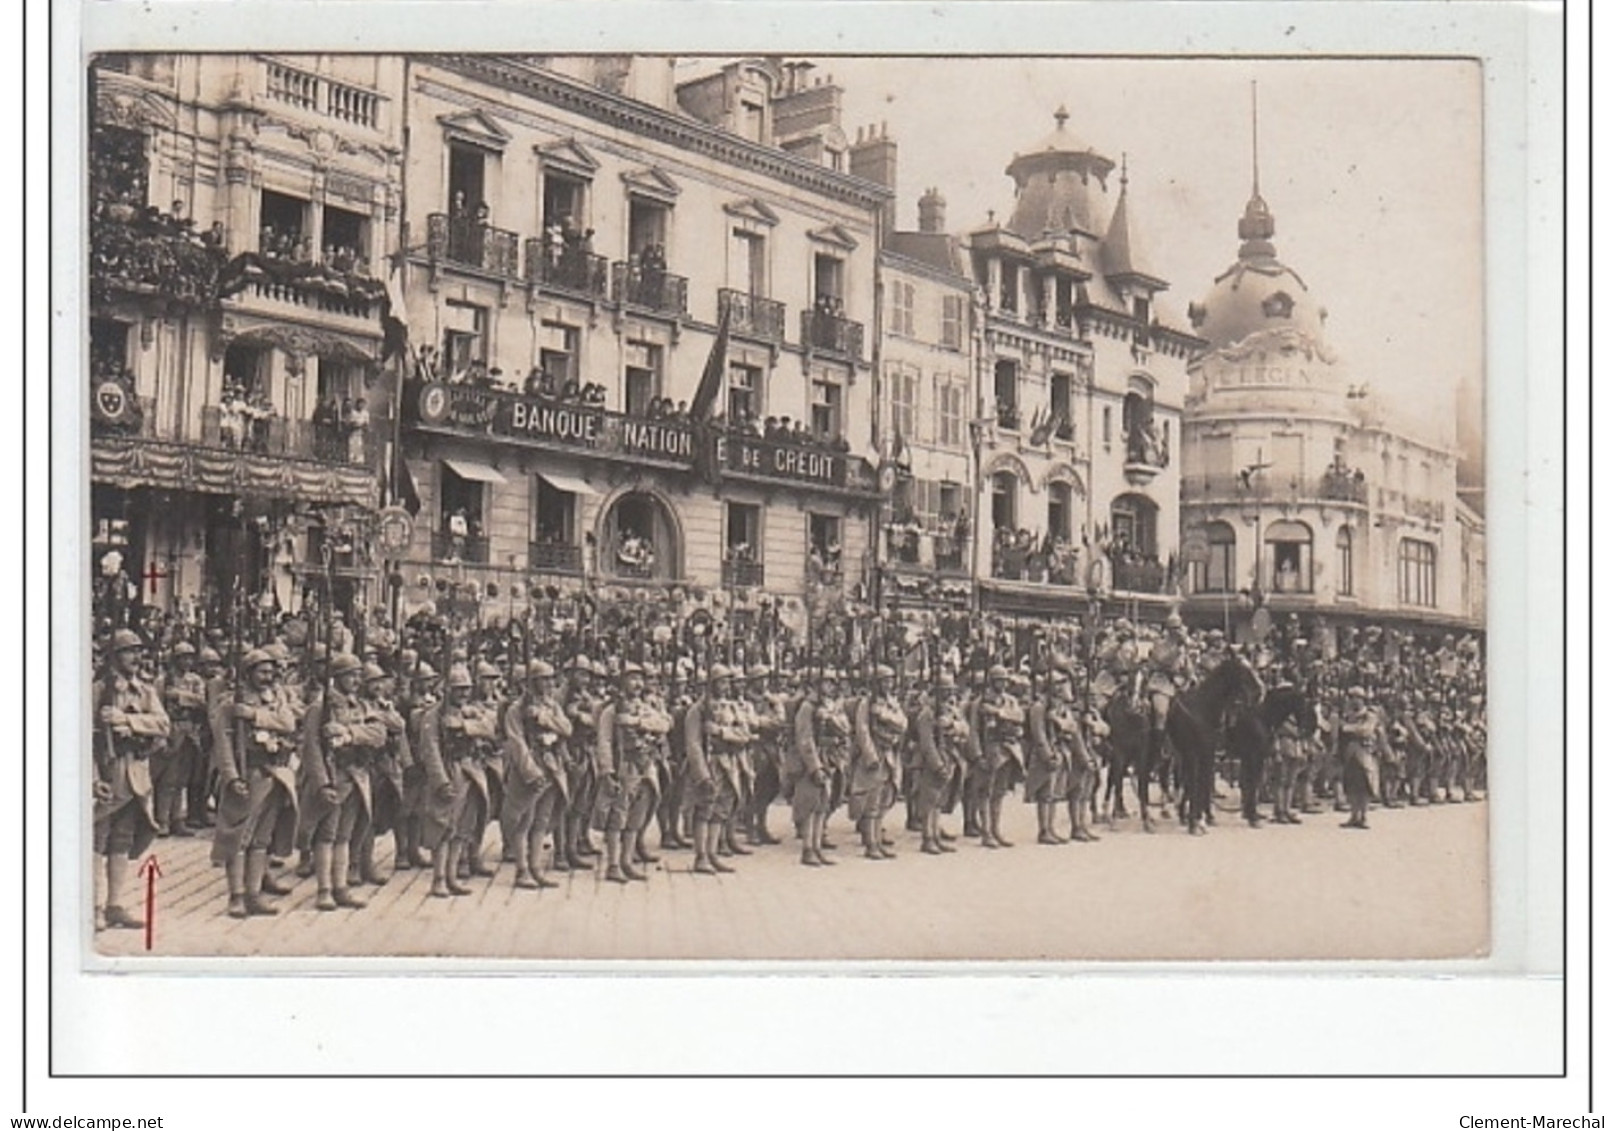 ORLEANS - CARTE PHOTO - MILITAIRES 1919 - Très Bon état - Orleans